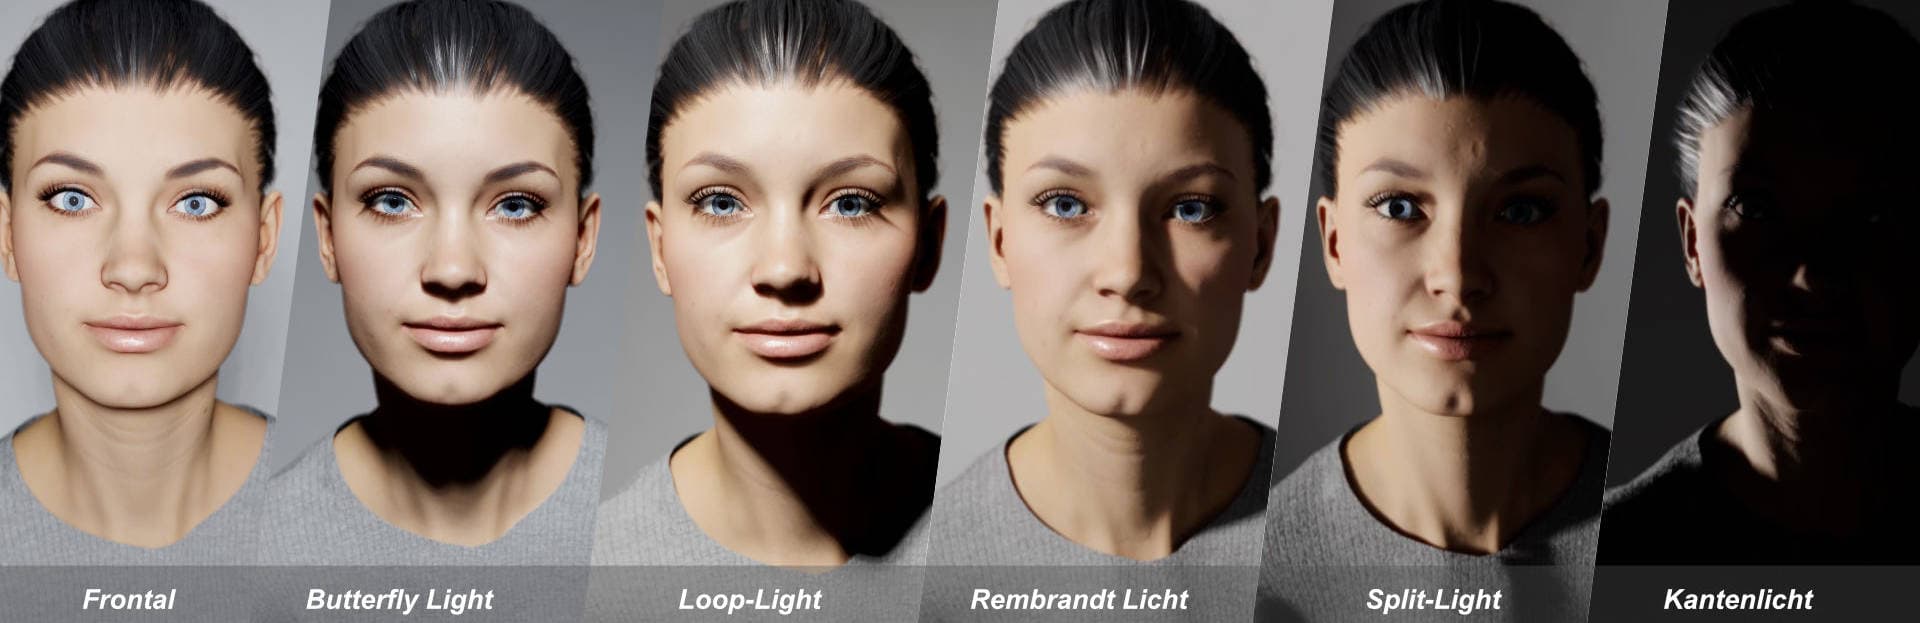 virtuelles Fotomodell, damit keine Änderung im Gesicht zwischen den verschiedenen Lichtsettings stattfinden kann